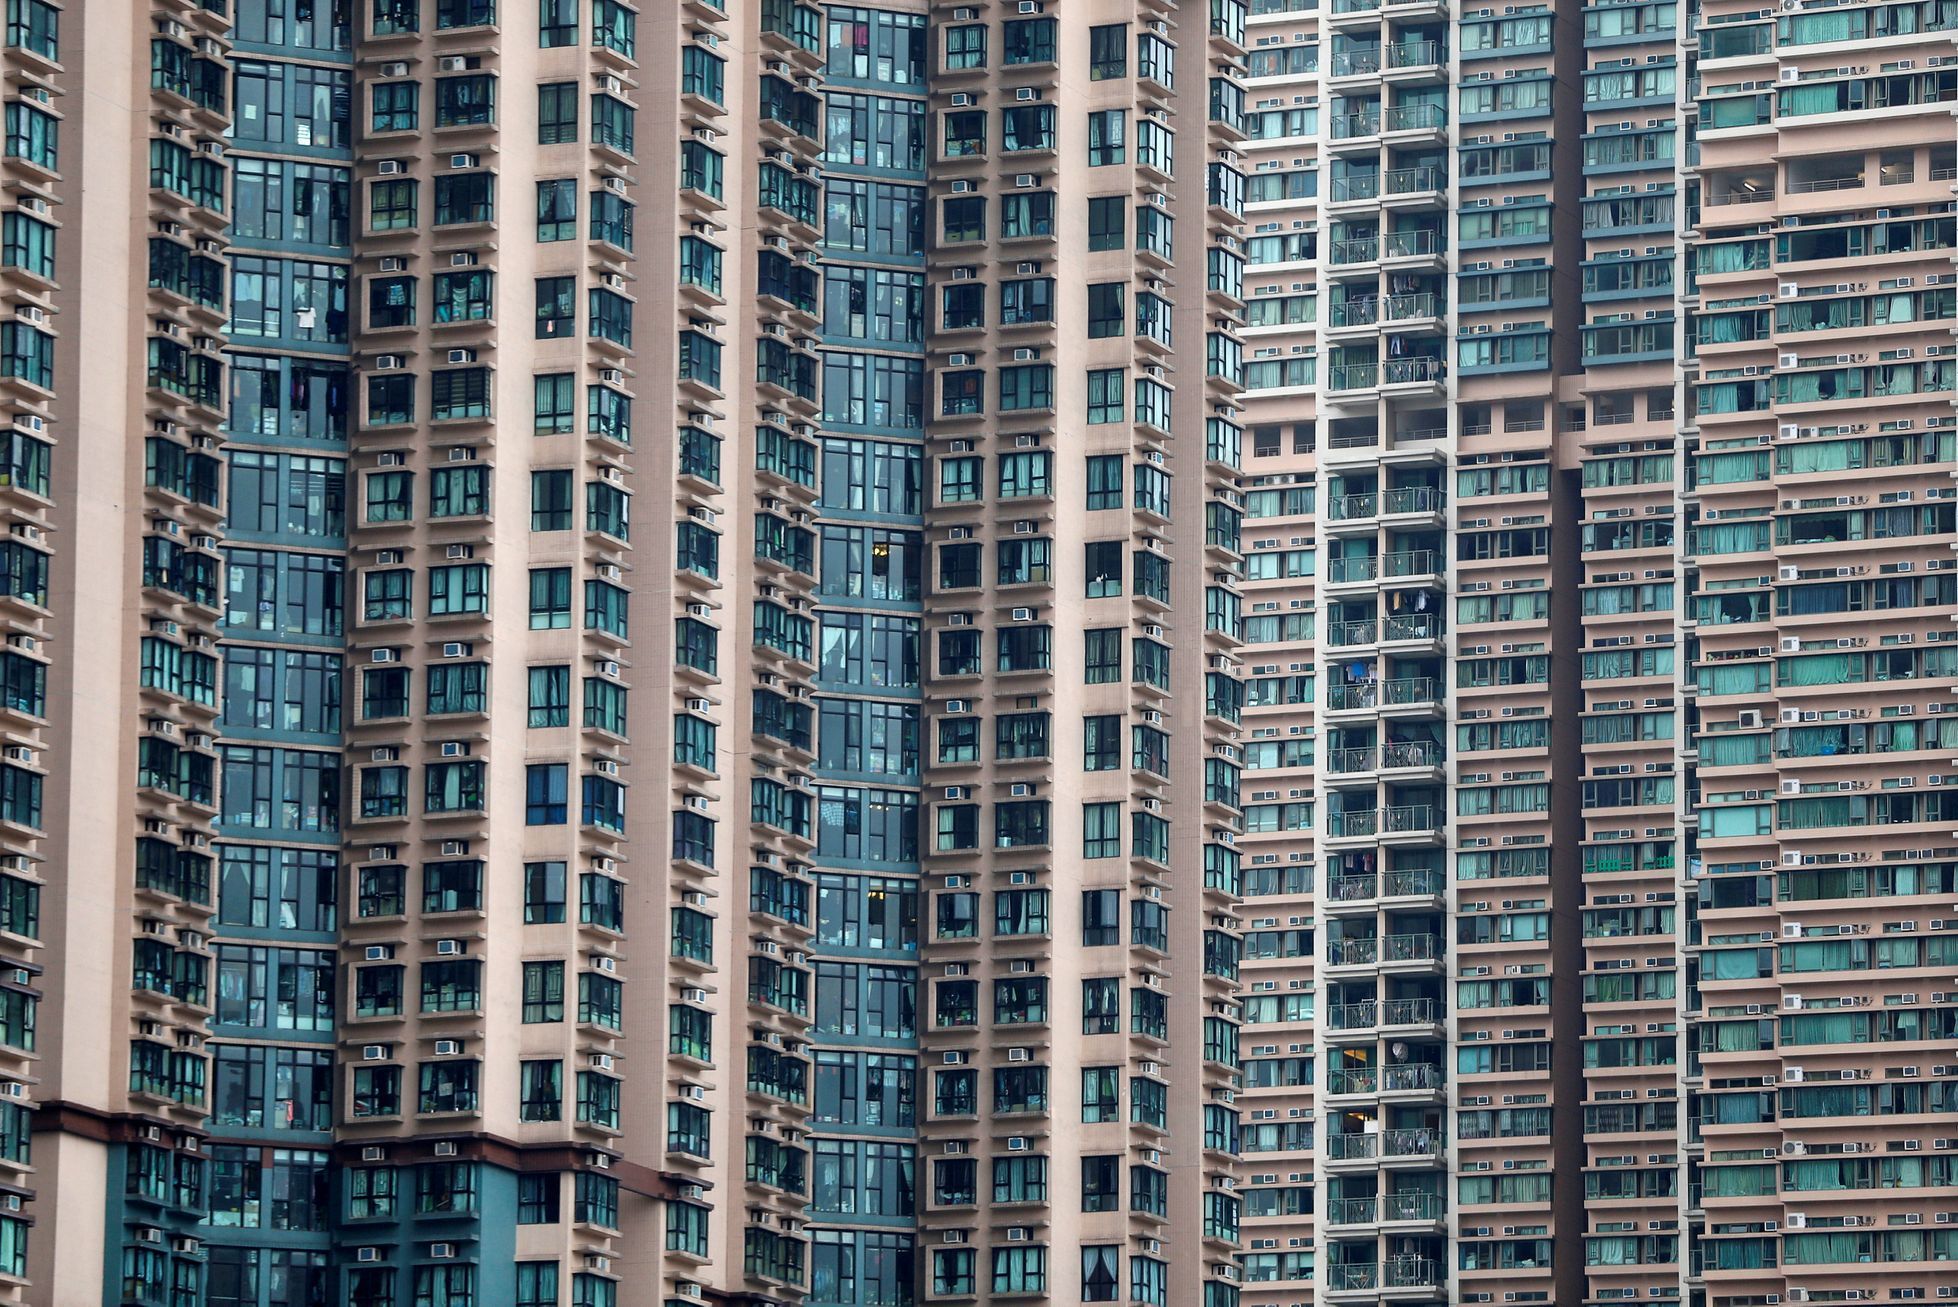 Hongkong bydlení